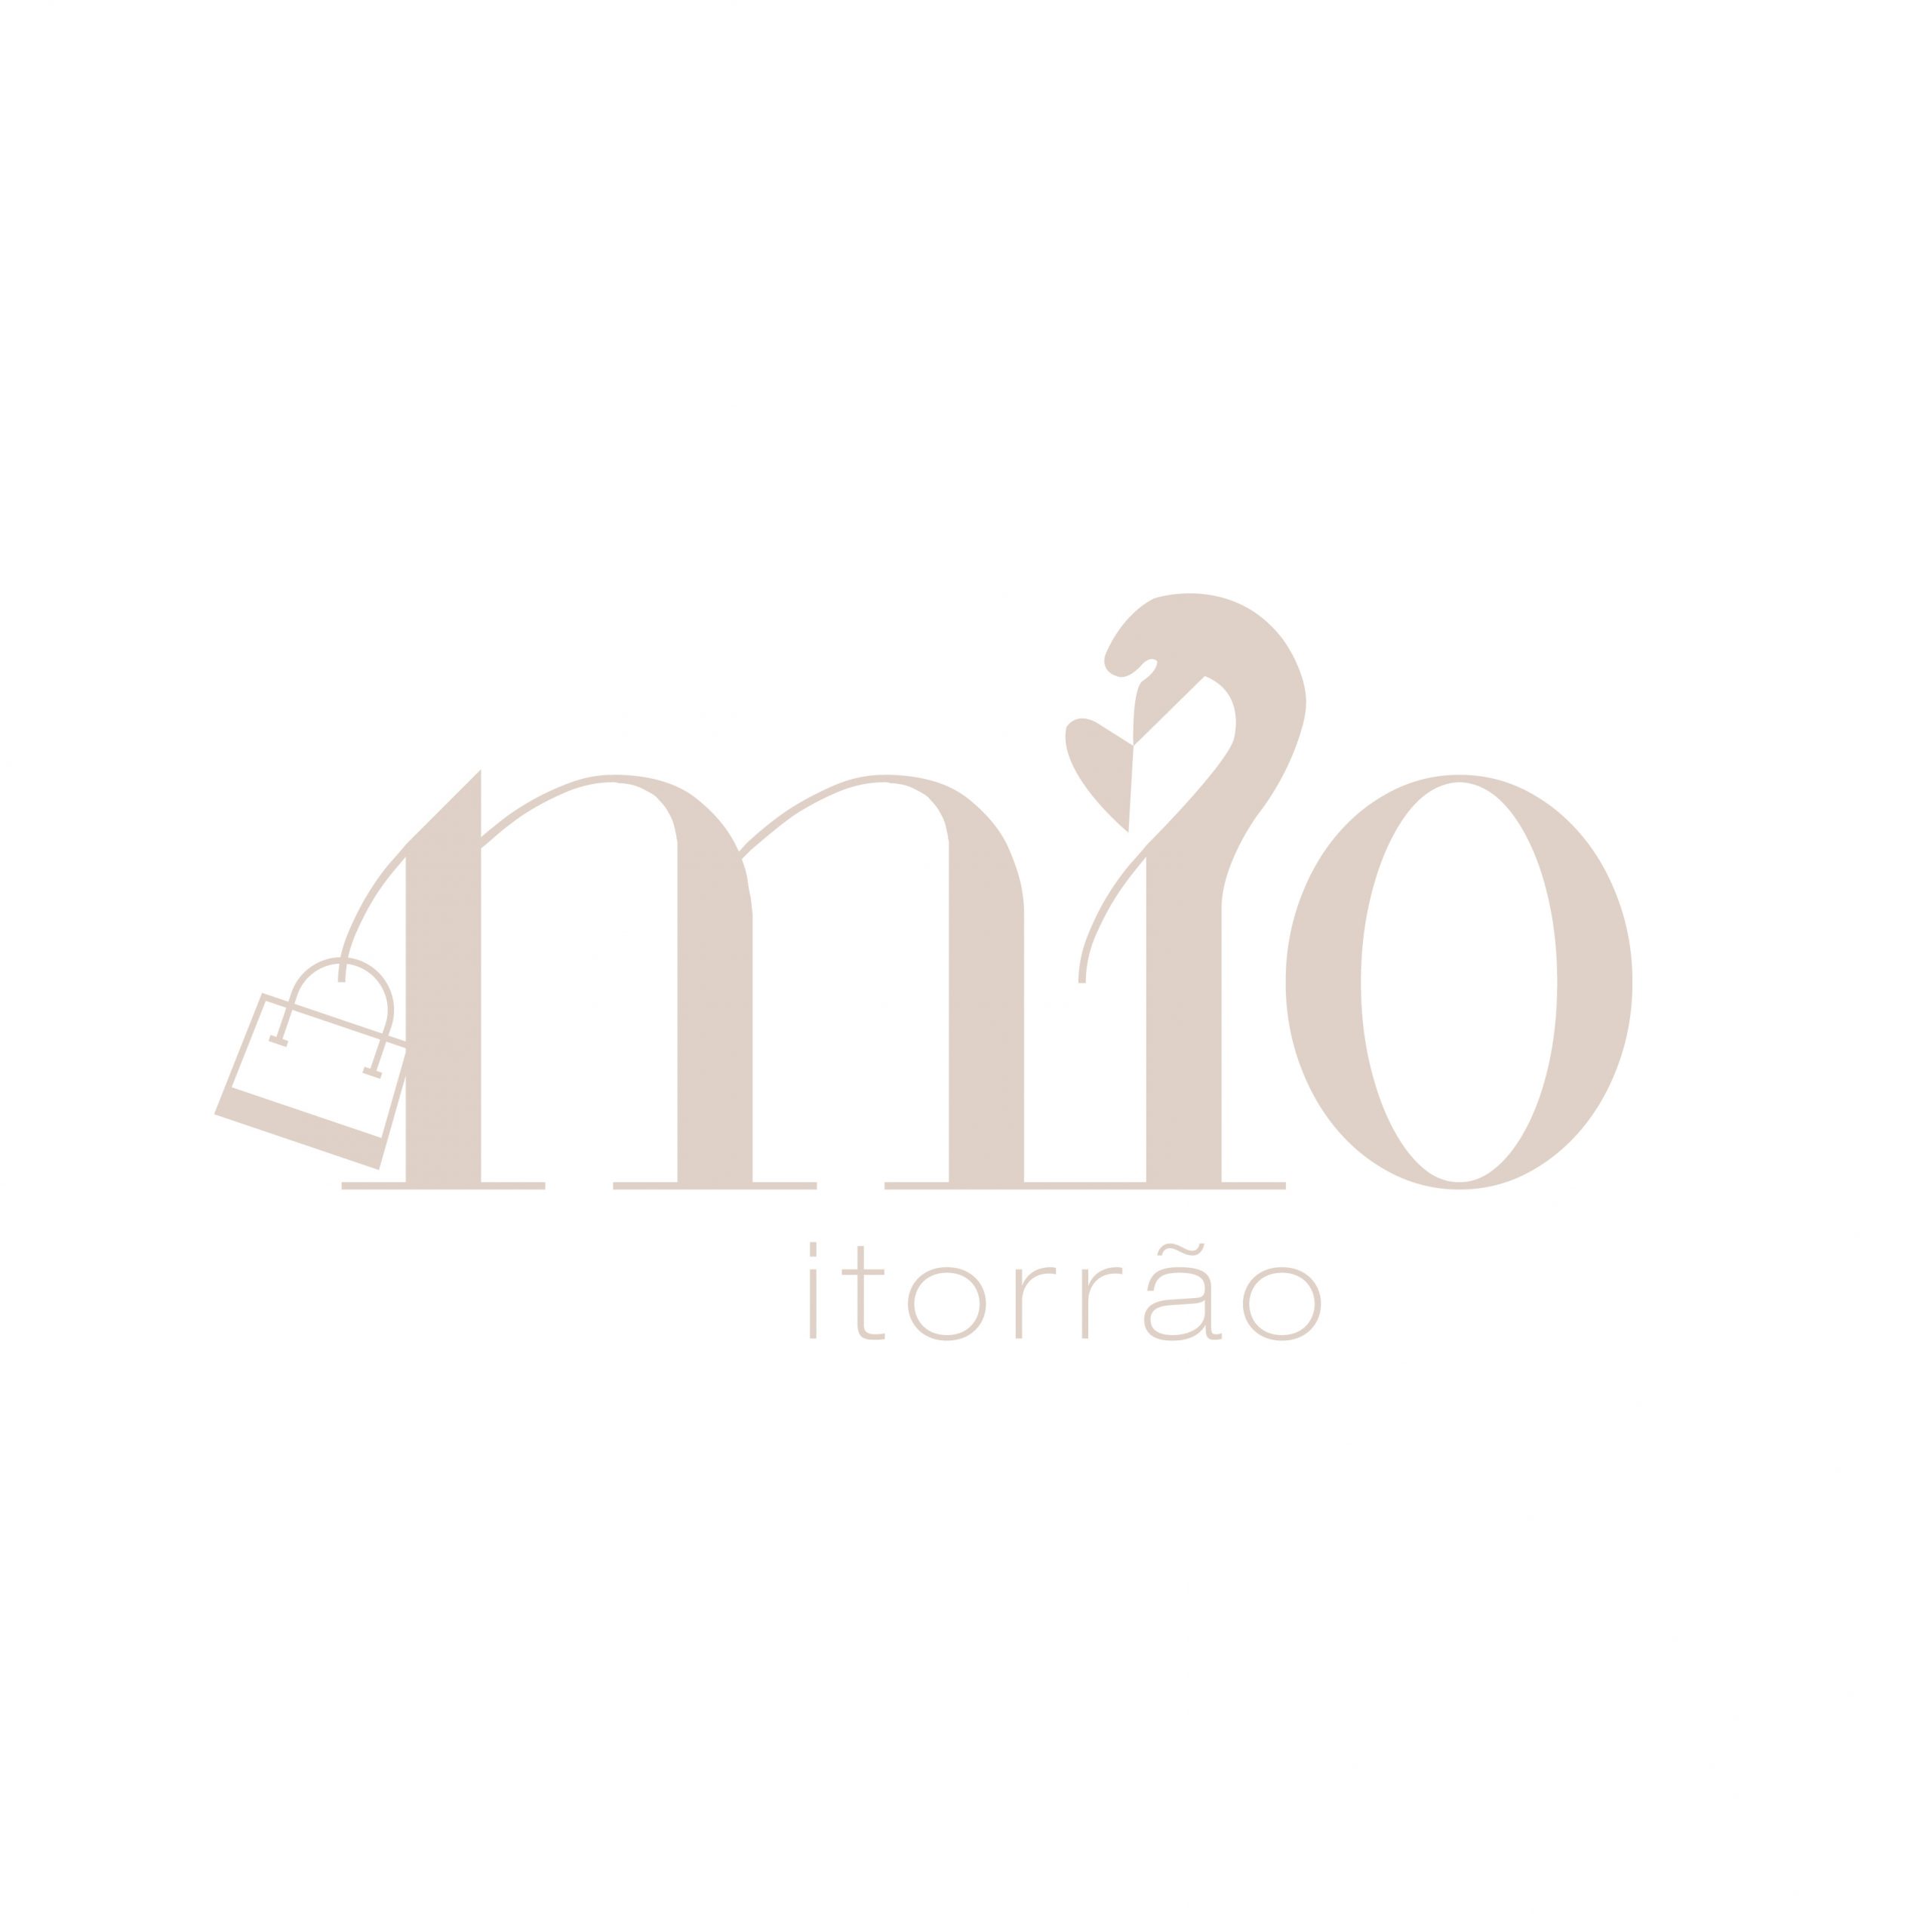 MIO iTORRÃO Logo Design